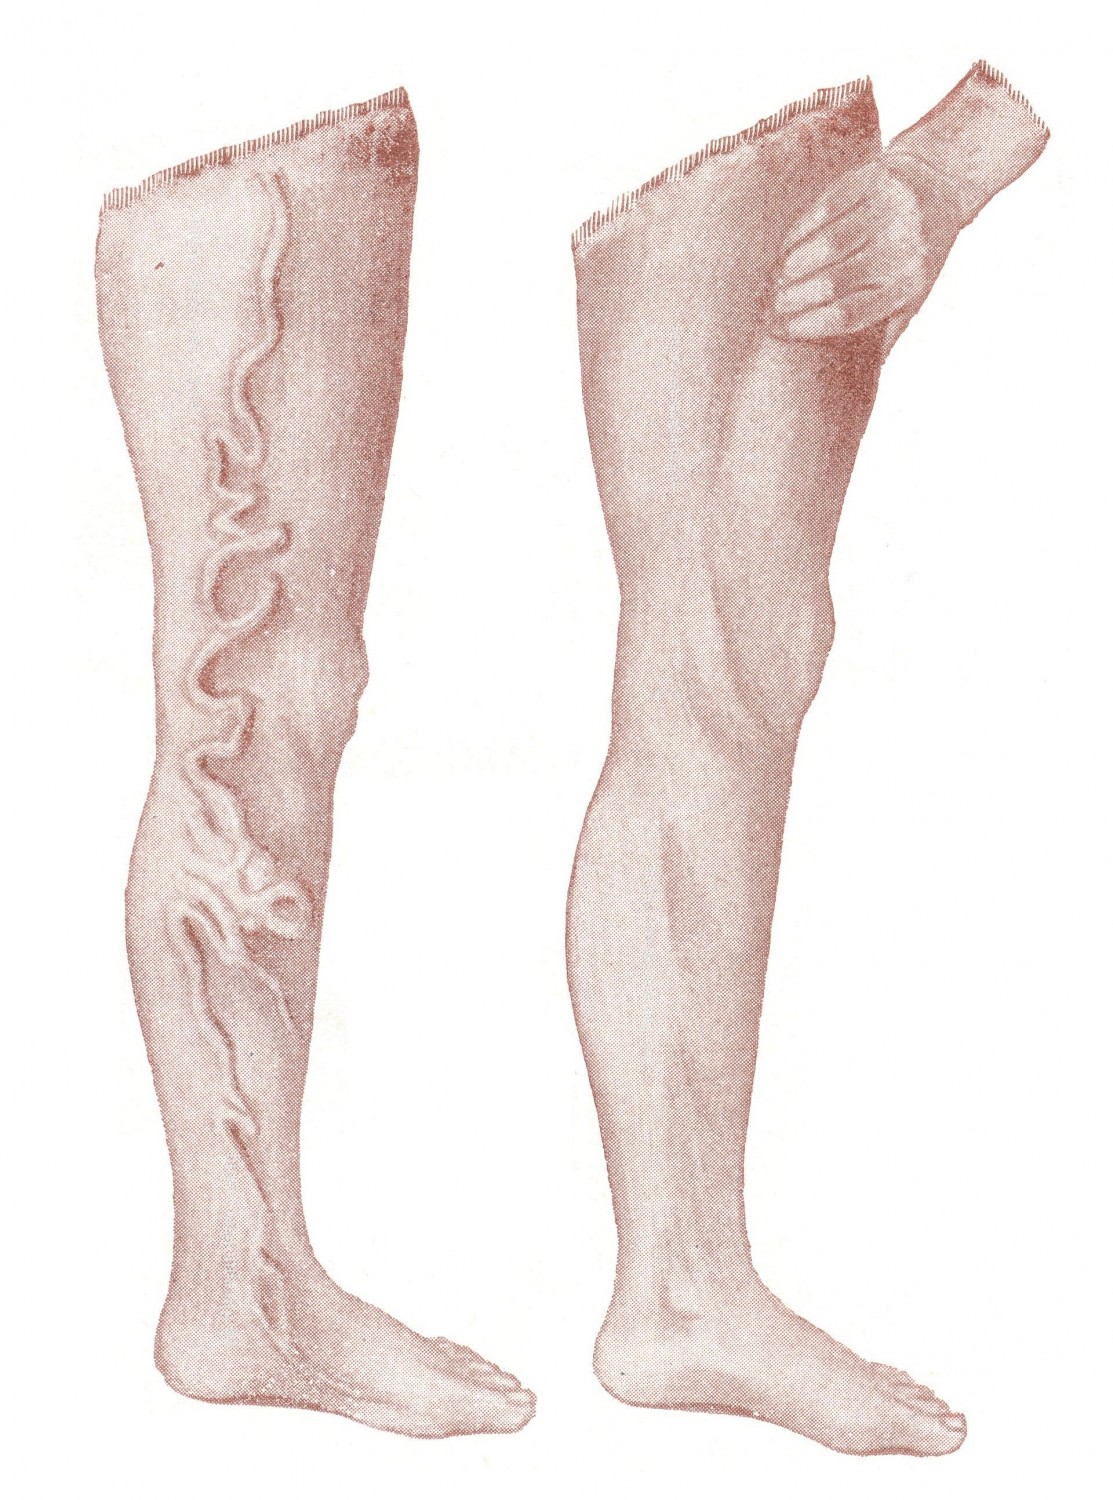 Расширение большой подкожной вены бедра - Varices venae saphenae magnae. Положительный симптом Тренделенбурга. 